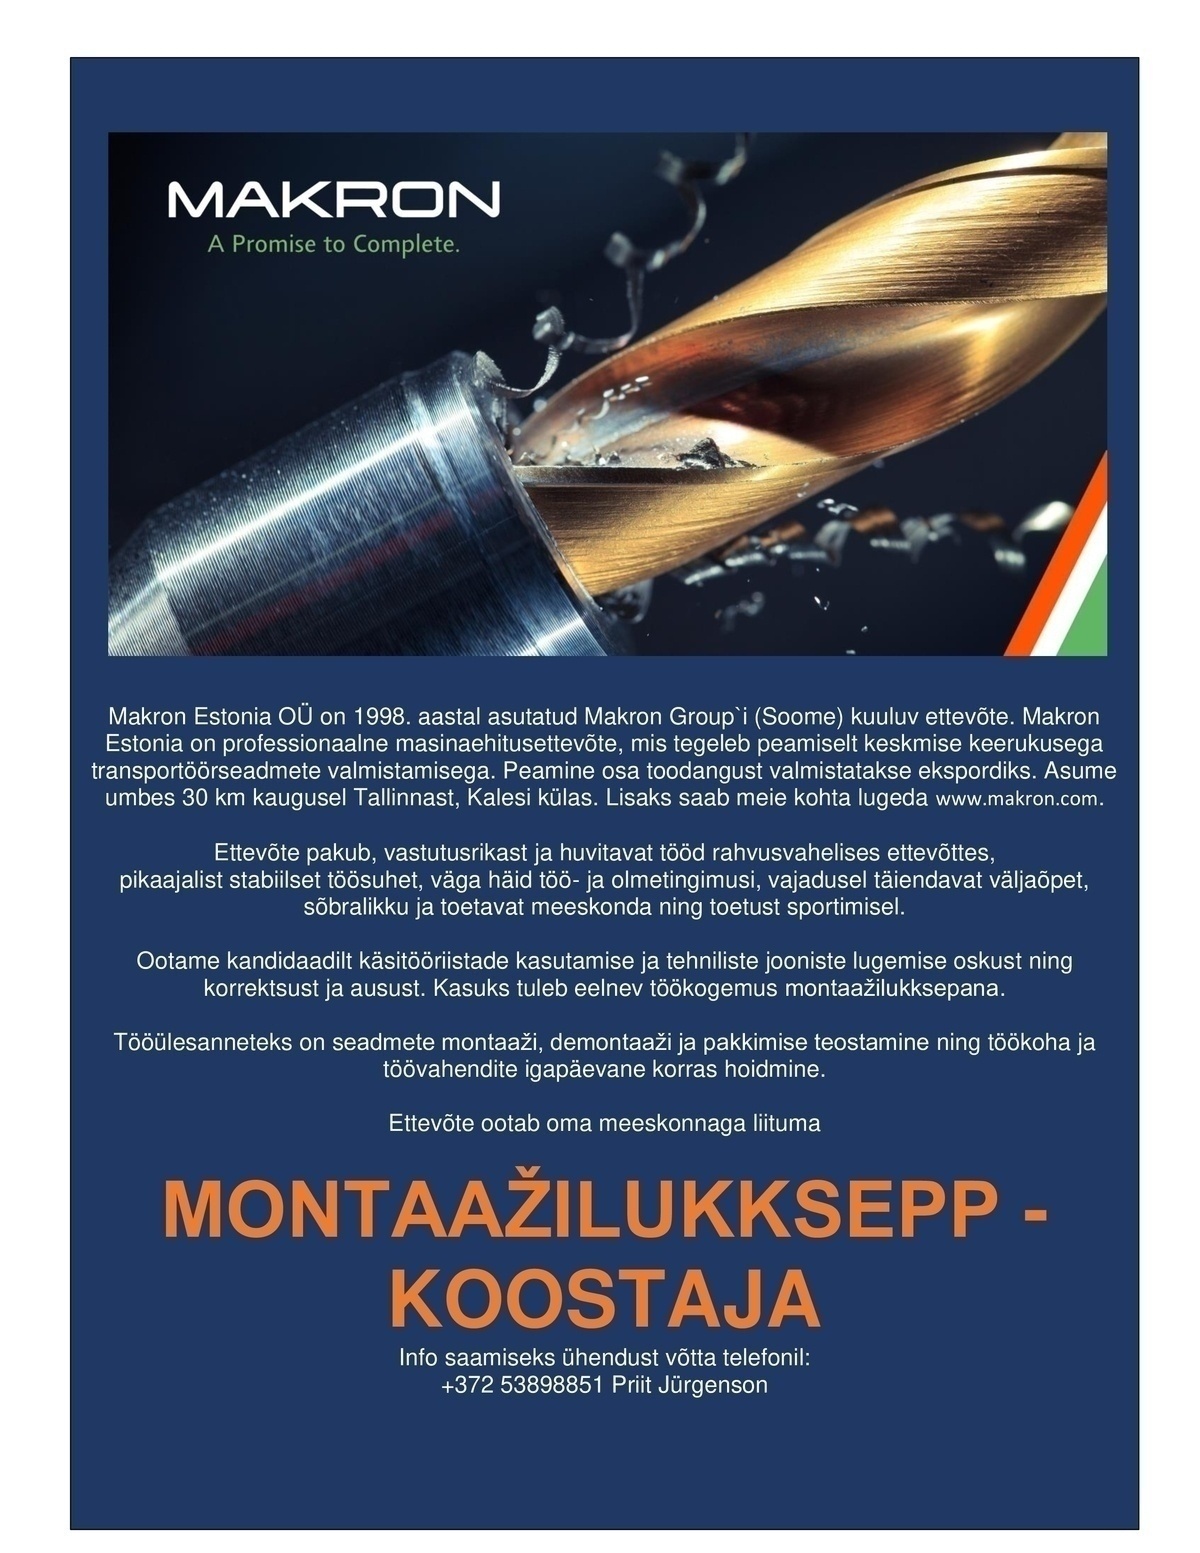 Makron Estonia OÜ Montaažilukksepp - koostaja